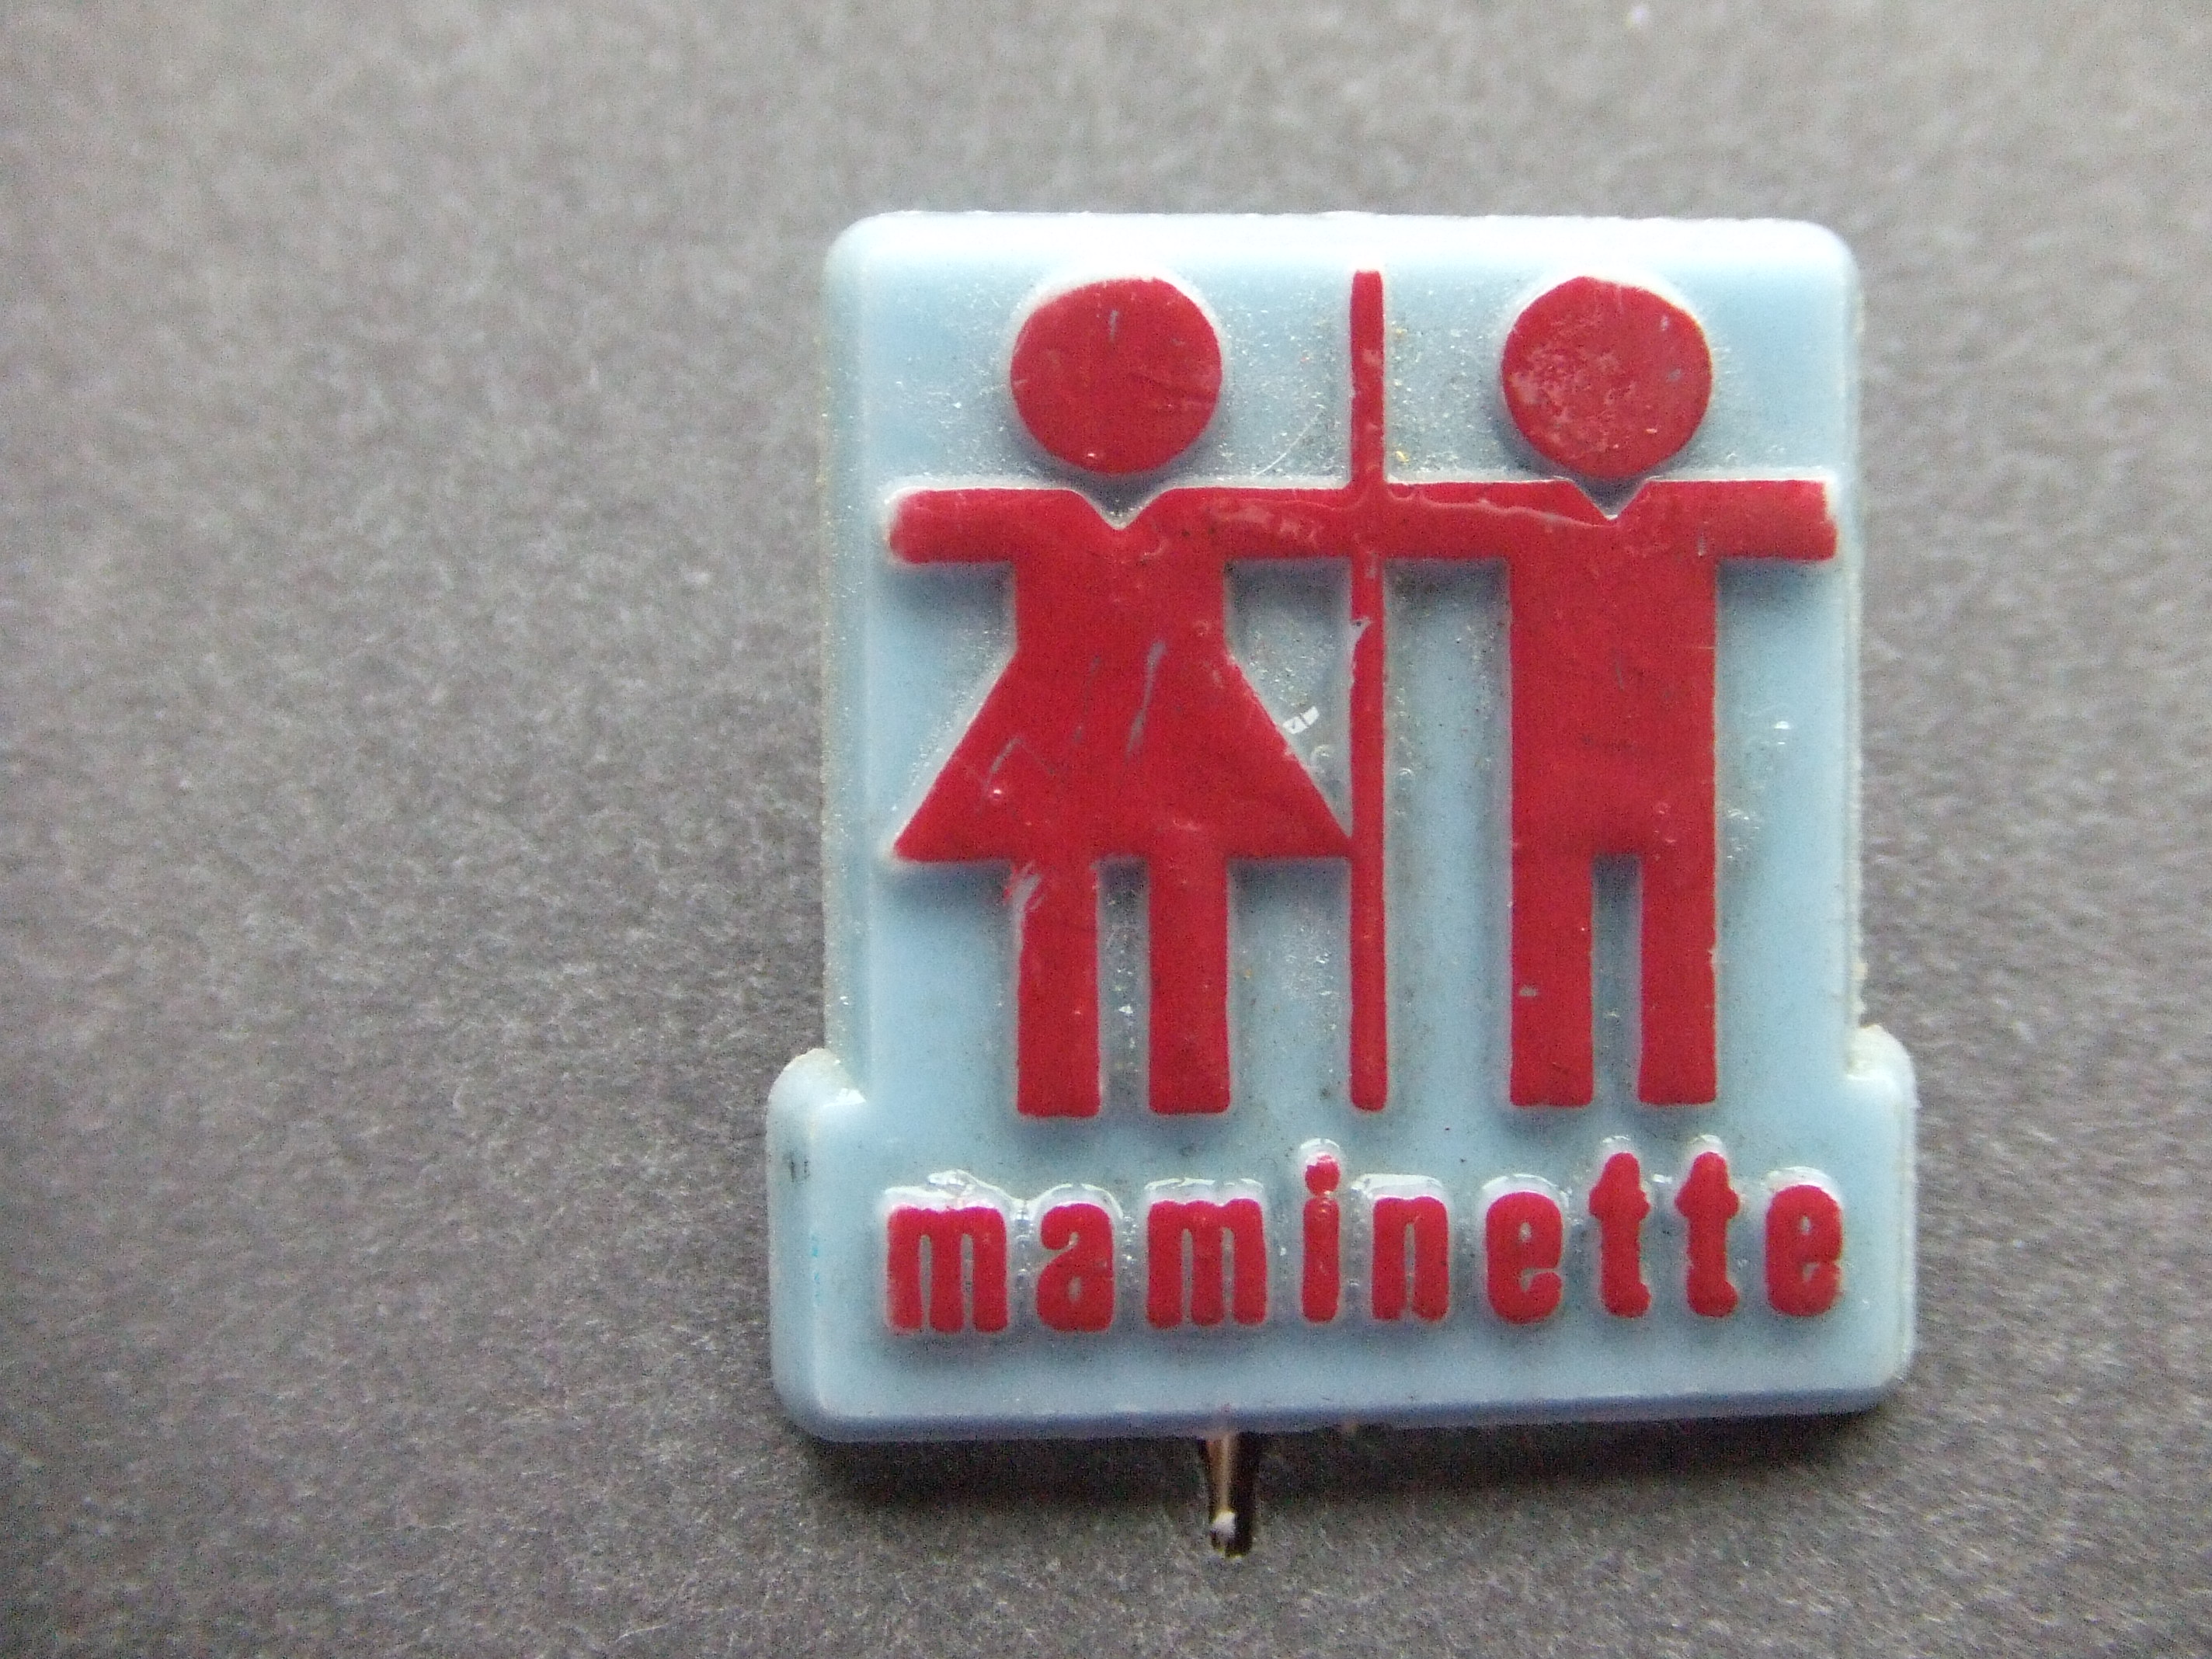 Maminette babyartikelen, Kinderkleding Amsterdam logo rood